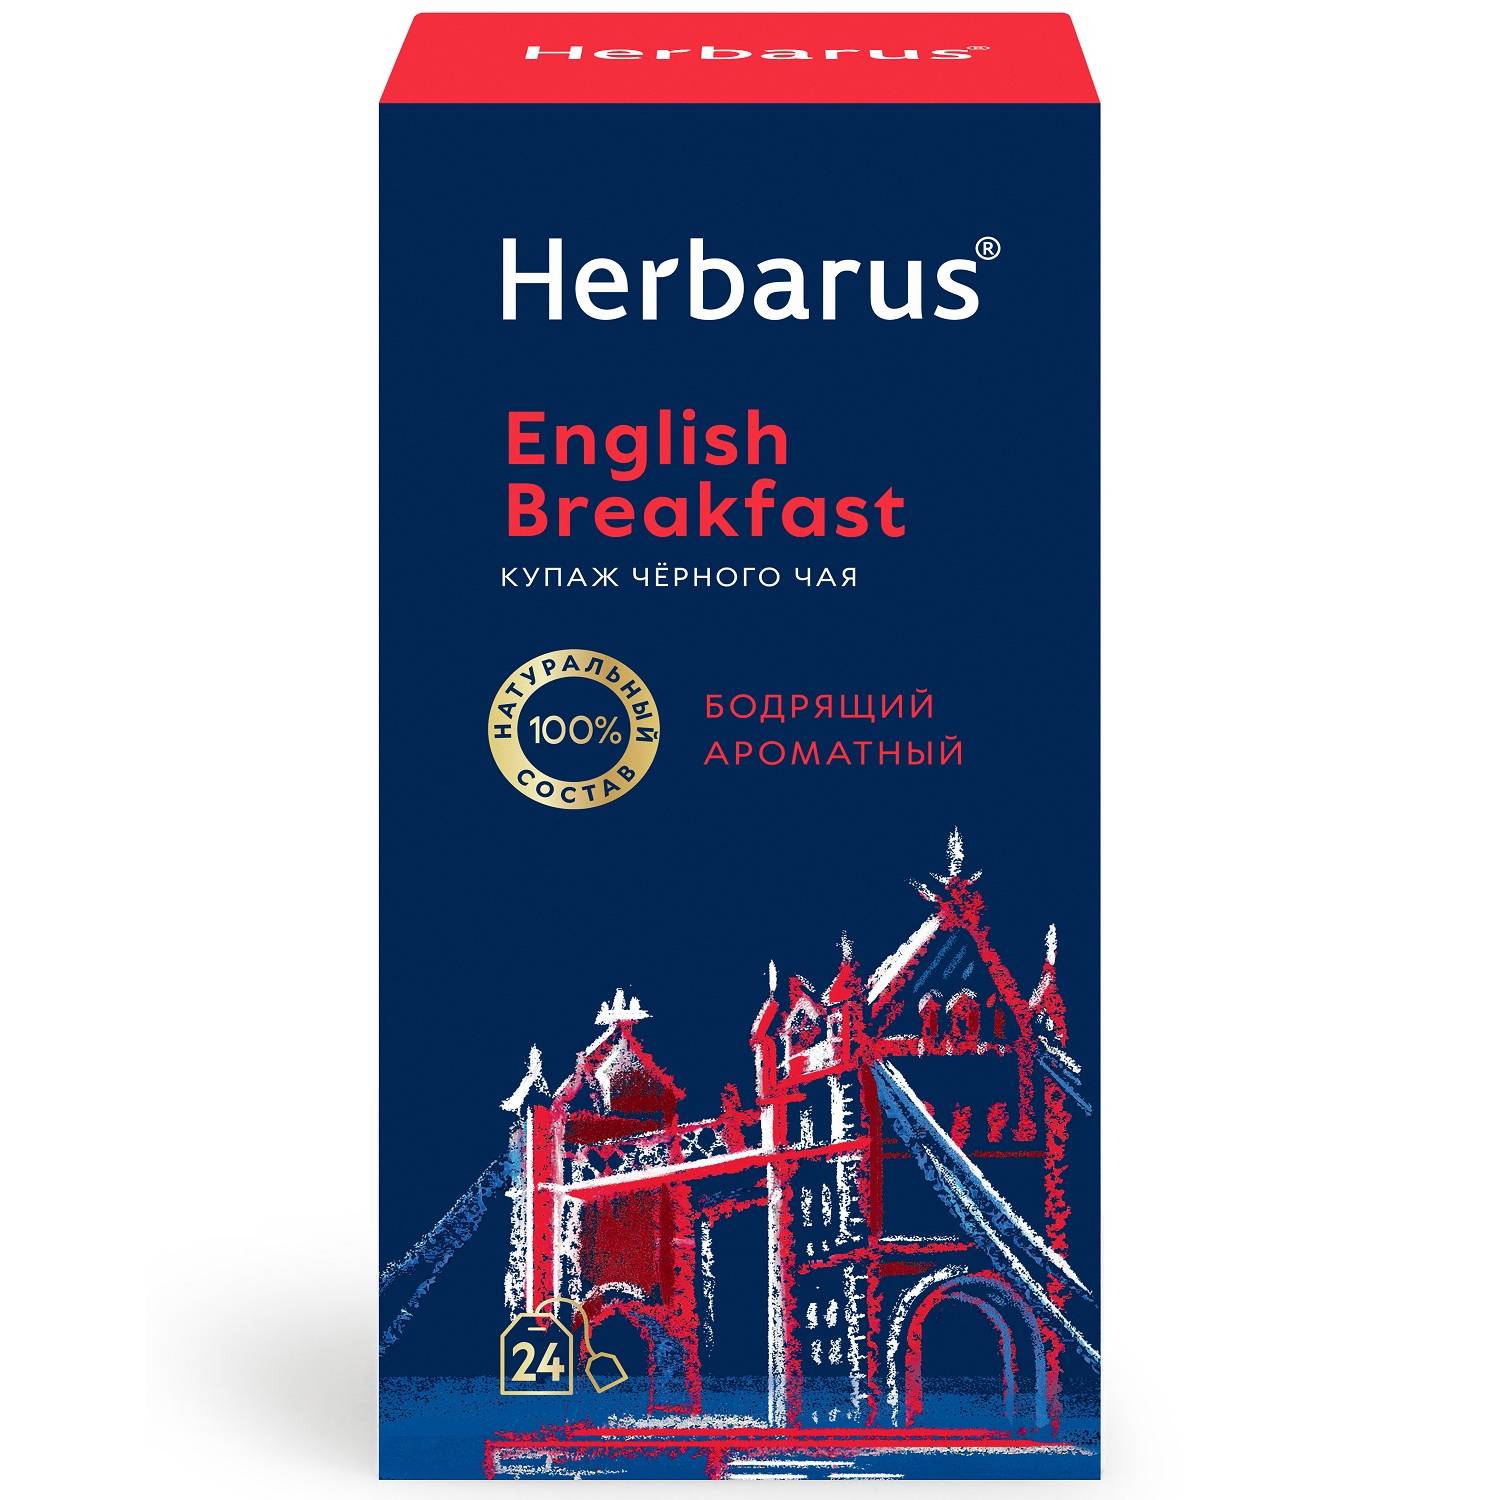 Herbarus Купаж черного чая English Breakfast, 24 пакетика х 2 г (Herbarus, Классический чай) herbarus чай с добавками ассорти чай черный 24 х 2 г herbarus чай с добавками